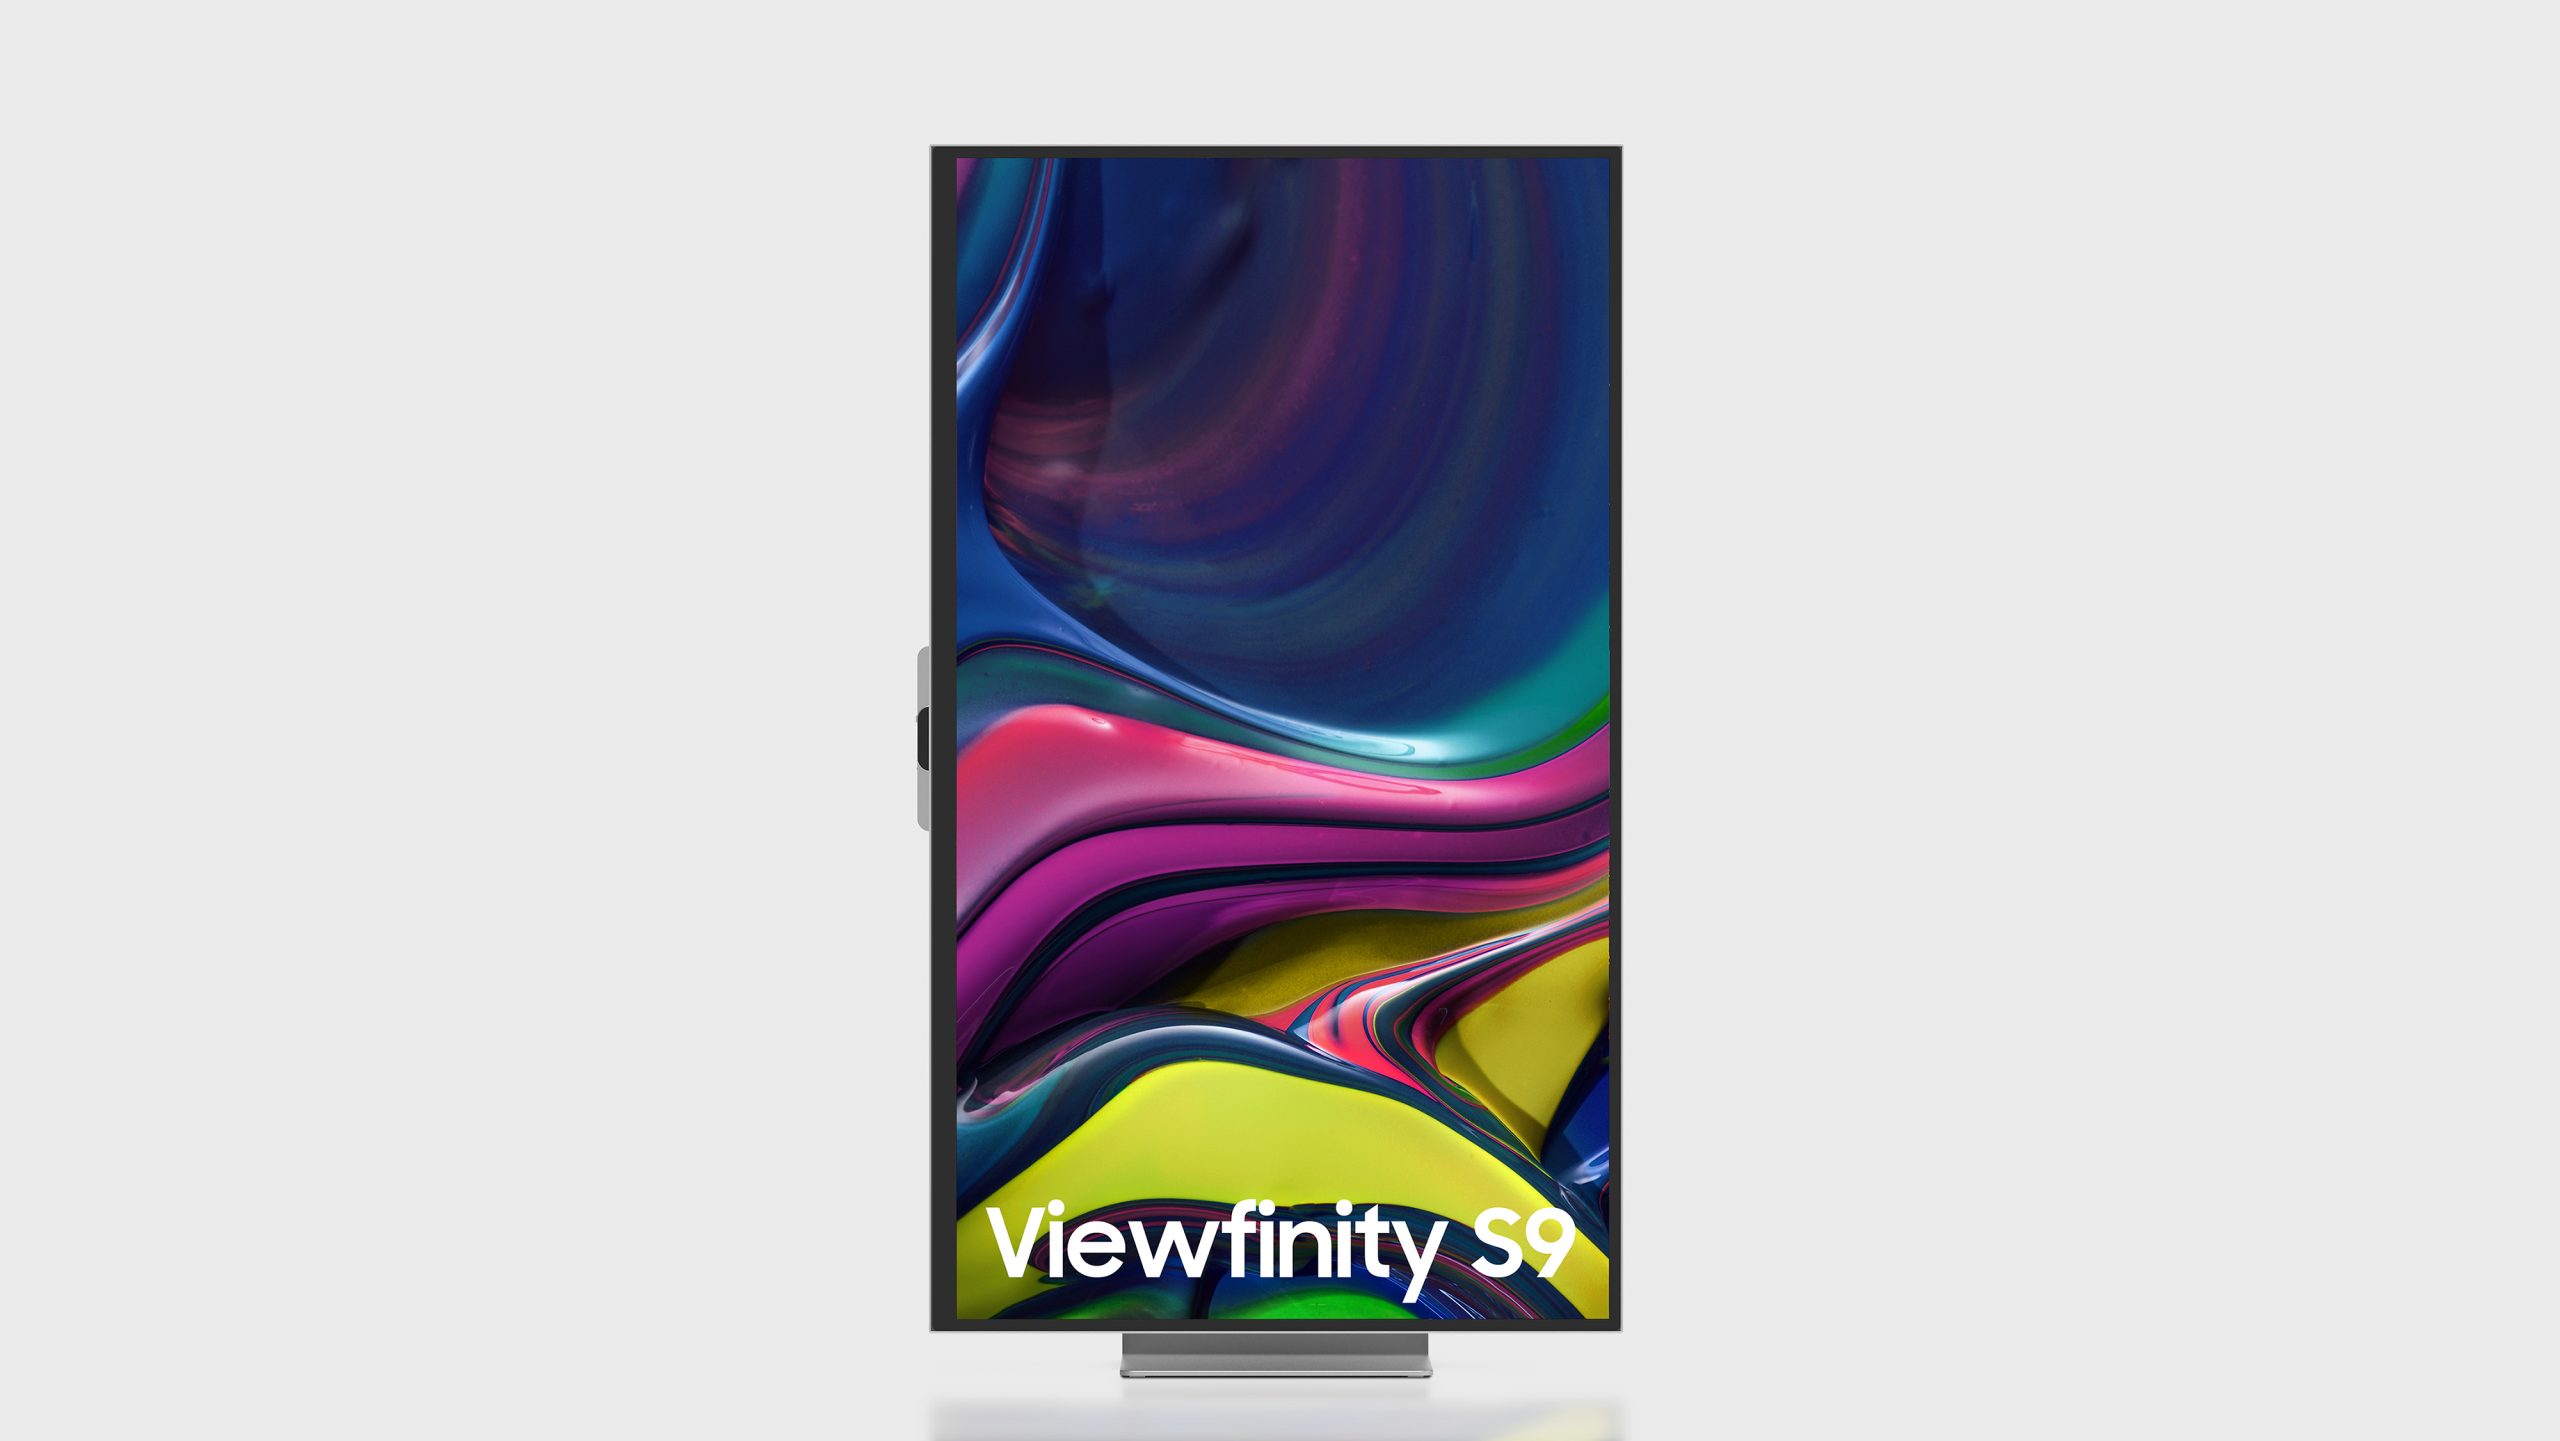 Samsung Viewfinity S9 : un moniteur 5K concurrent de l'Apple Studio Display  en beaucoup moins cher - Les Numériques